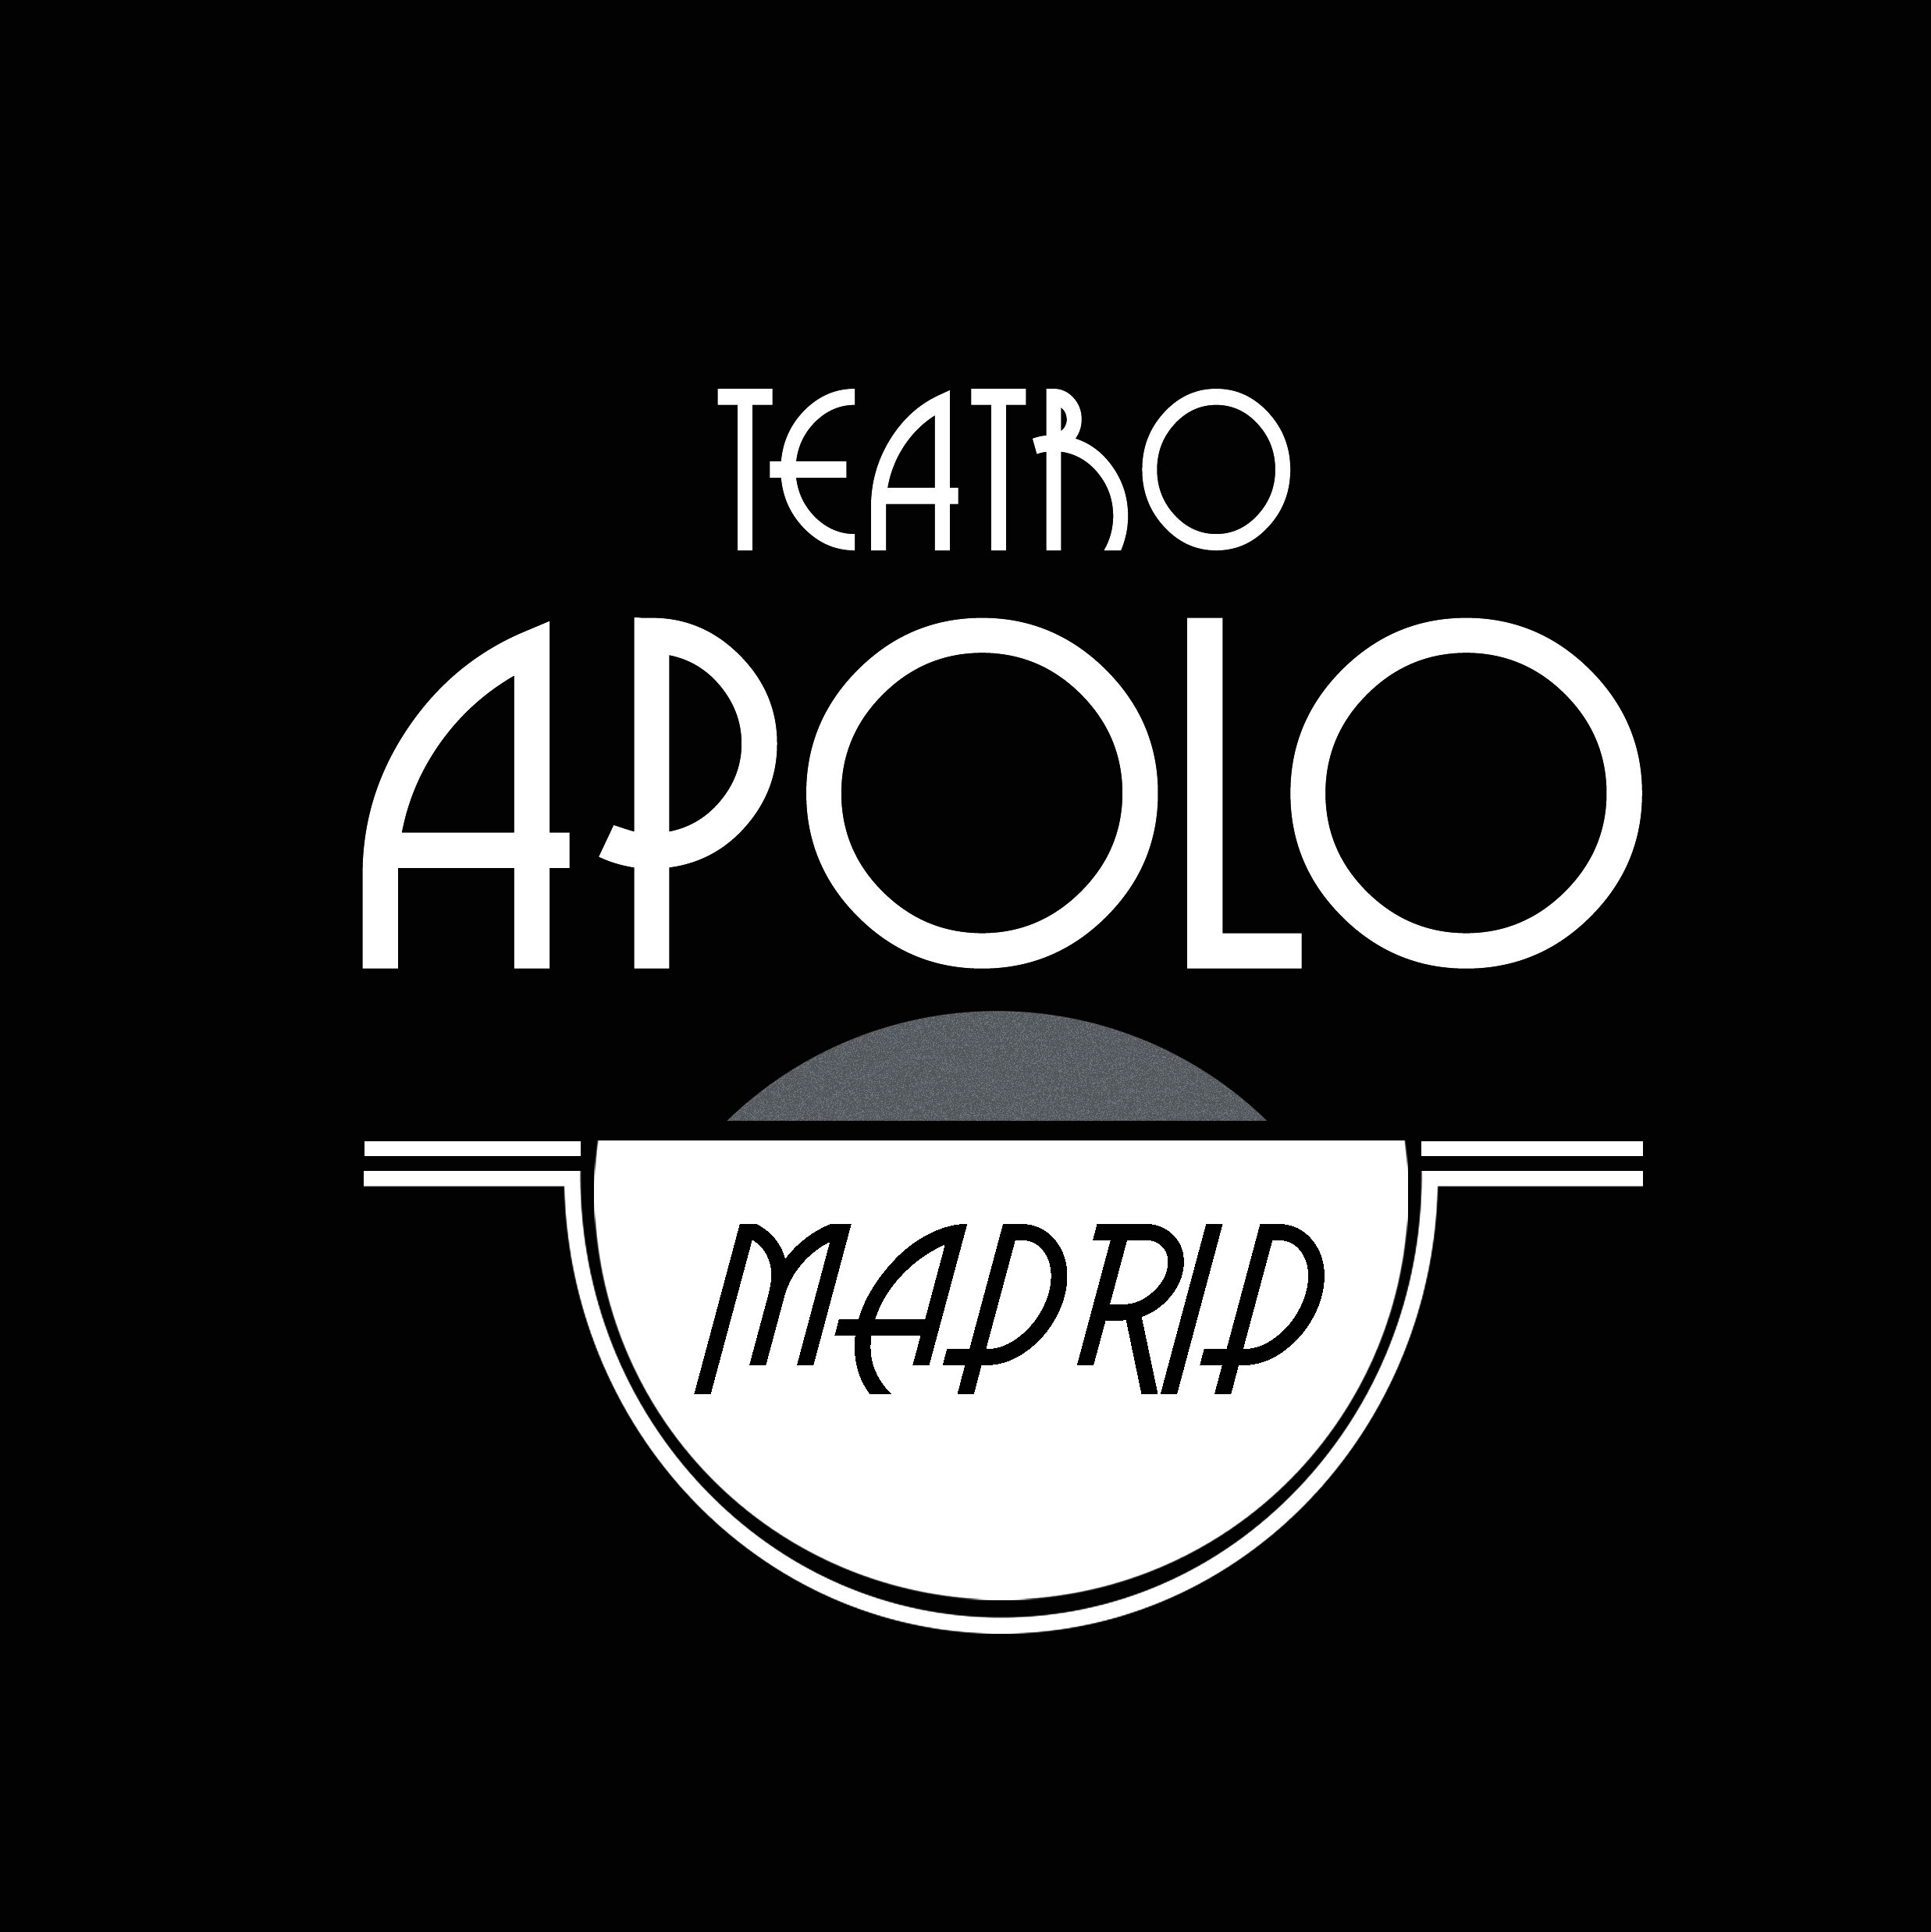 Teatro Apolo